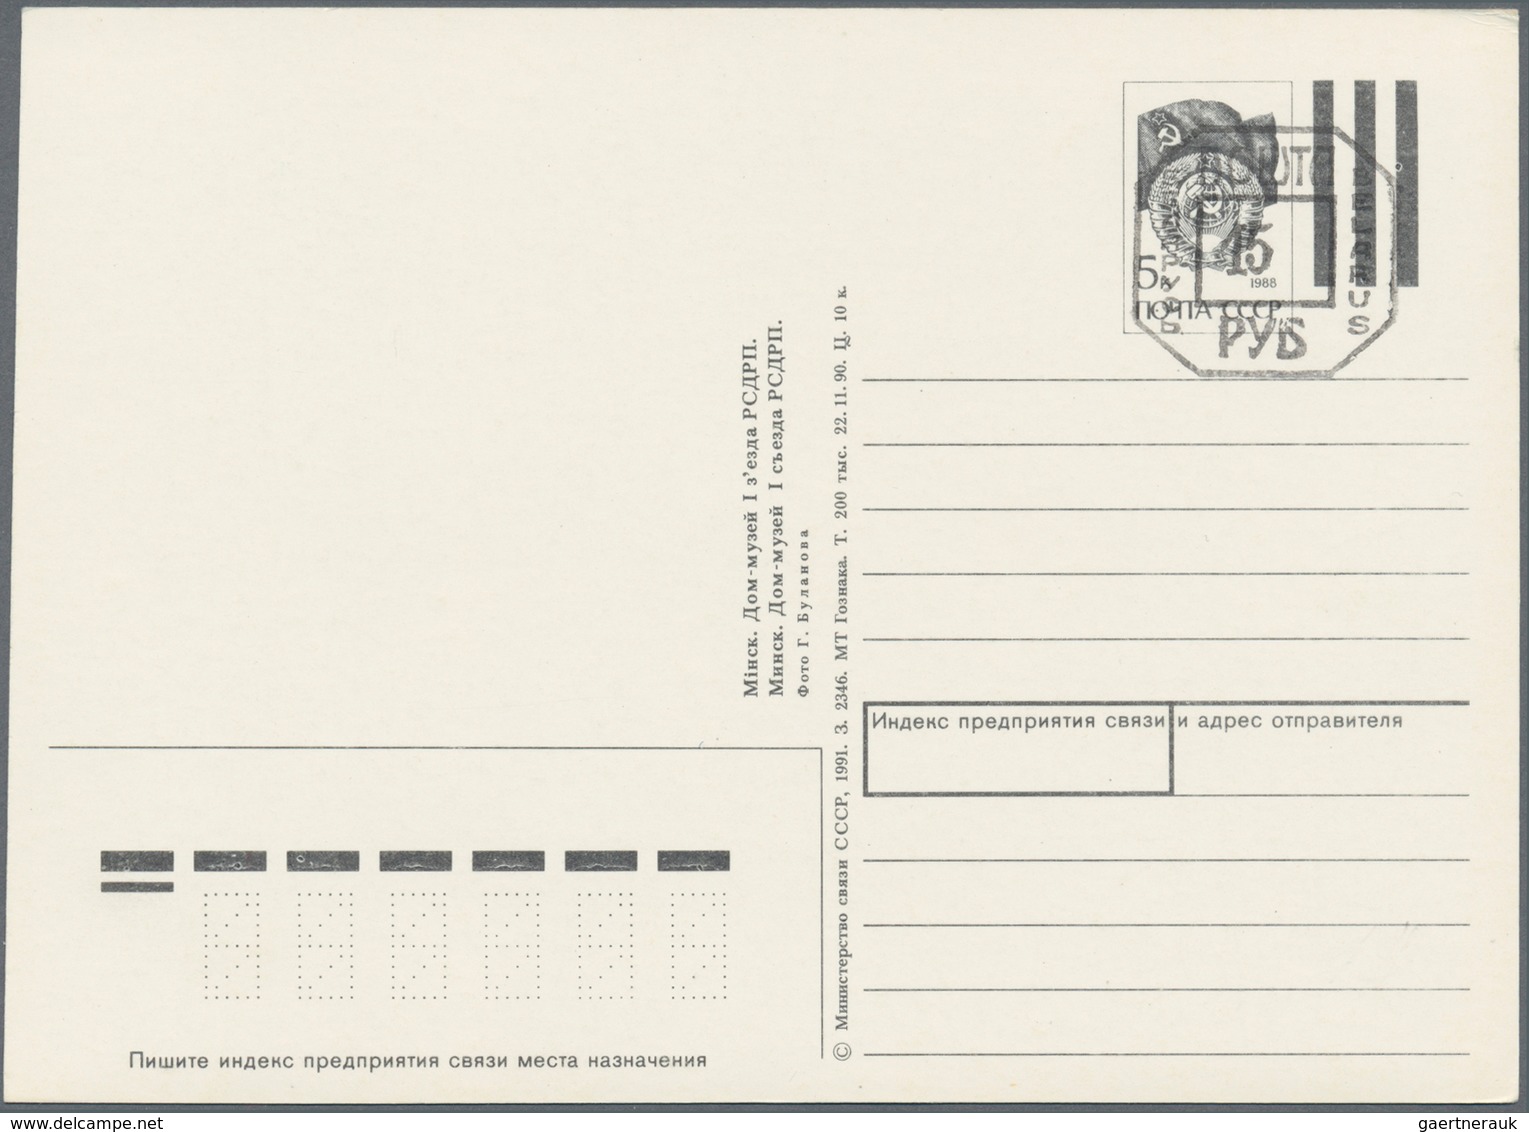 Weißrussland (Belarus): 1991/2001 ca. 1.190 postal stationary postcards, mostly picture postcards, i